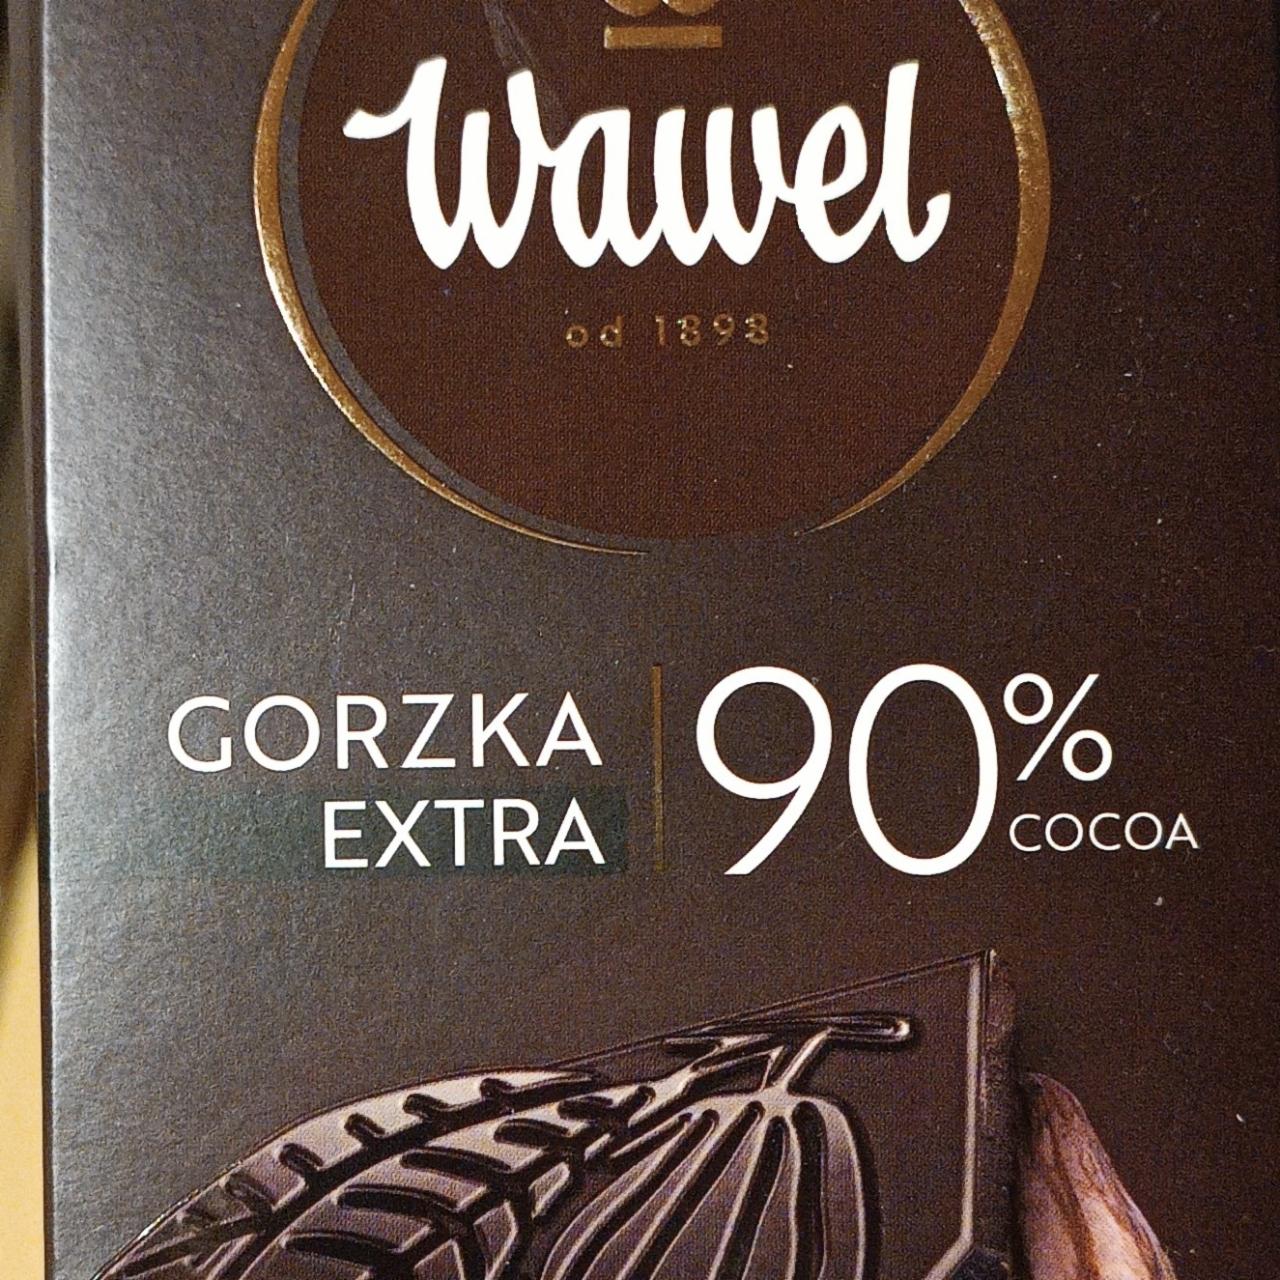 Fotografie - Gorzka extra 90% cocoa Wawel